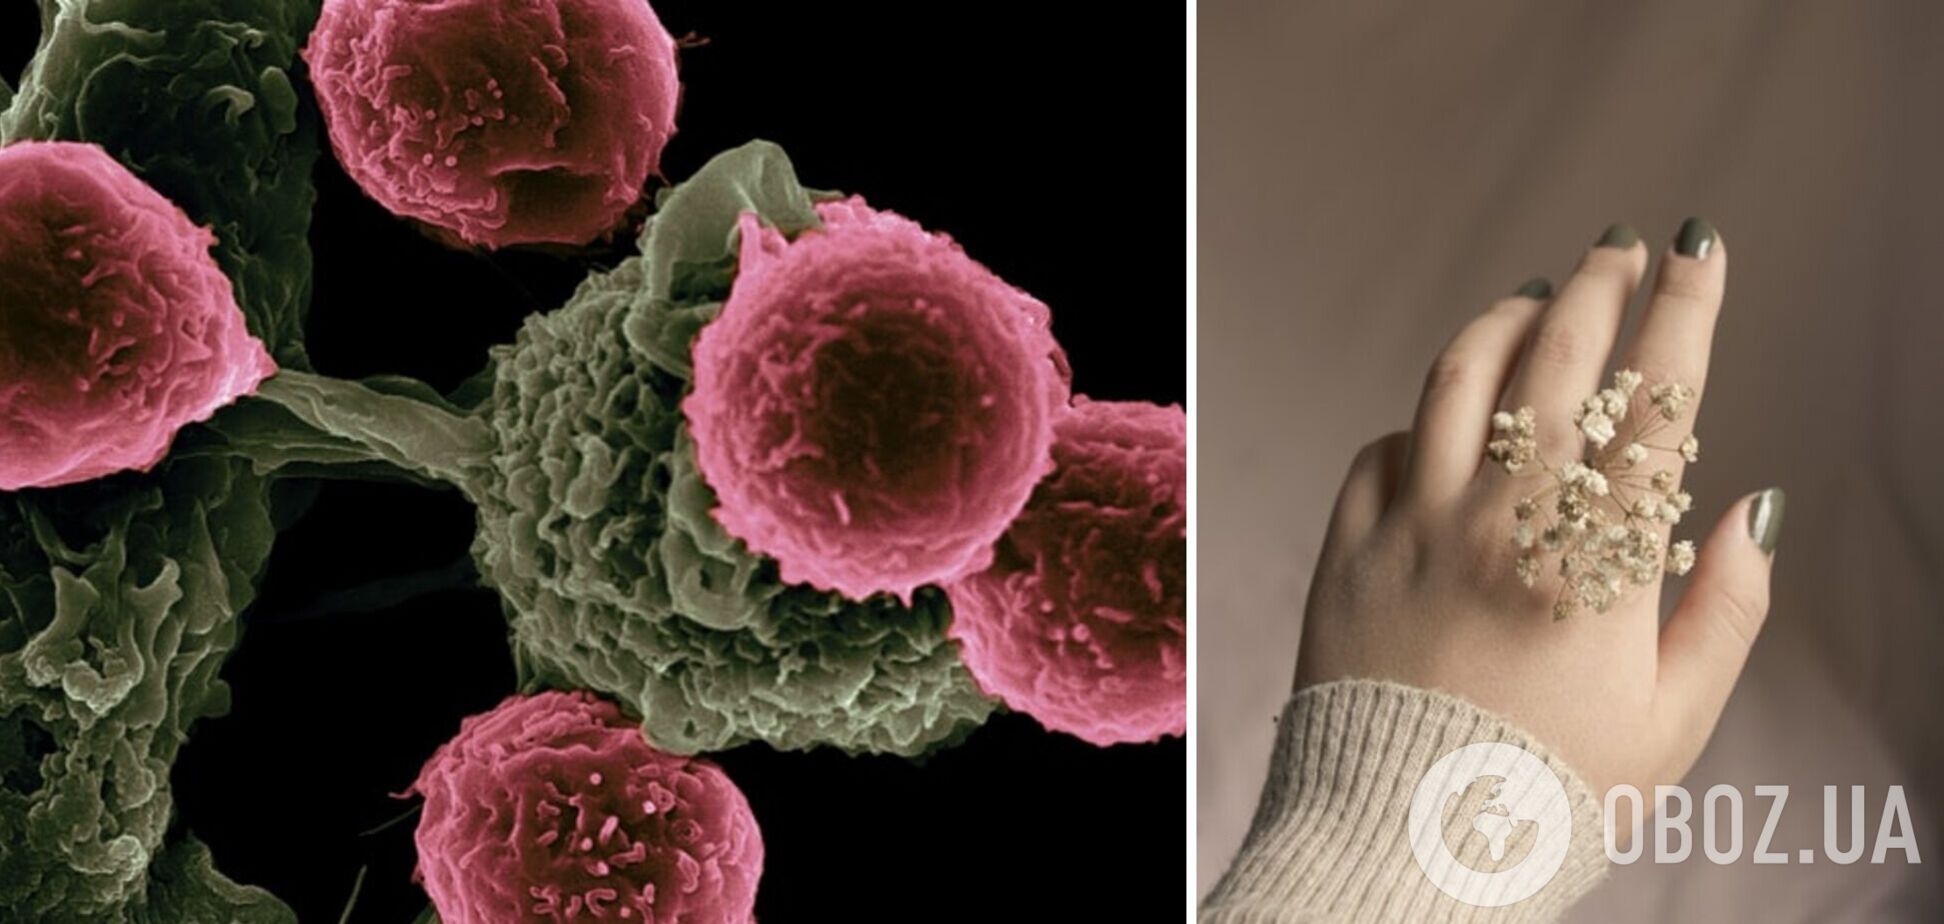 Вчені назвали ознаку раку, яка може проявлятися на нігтях